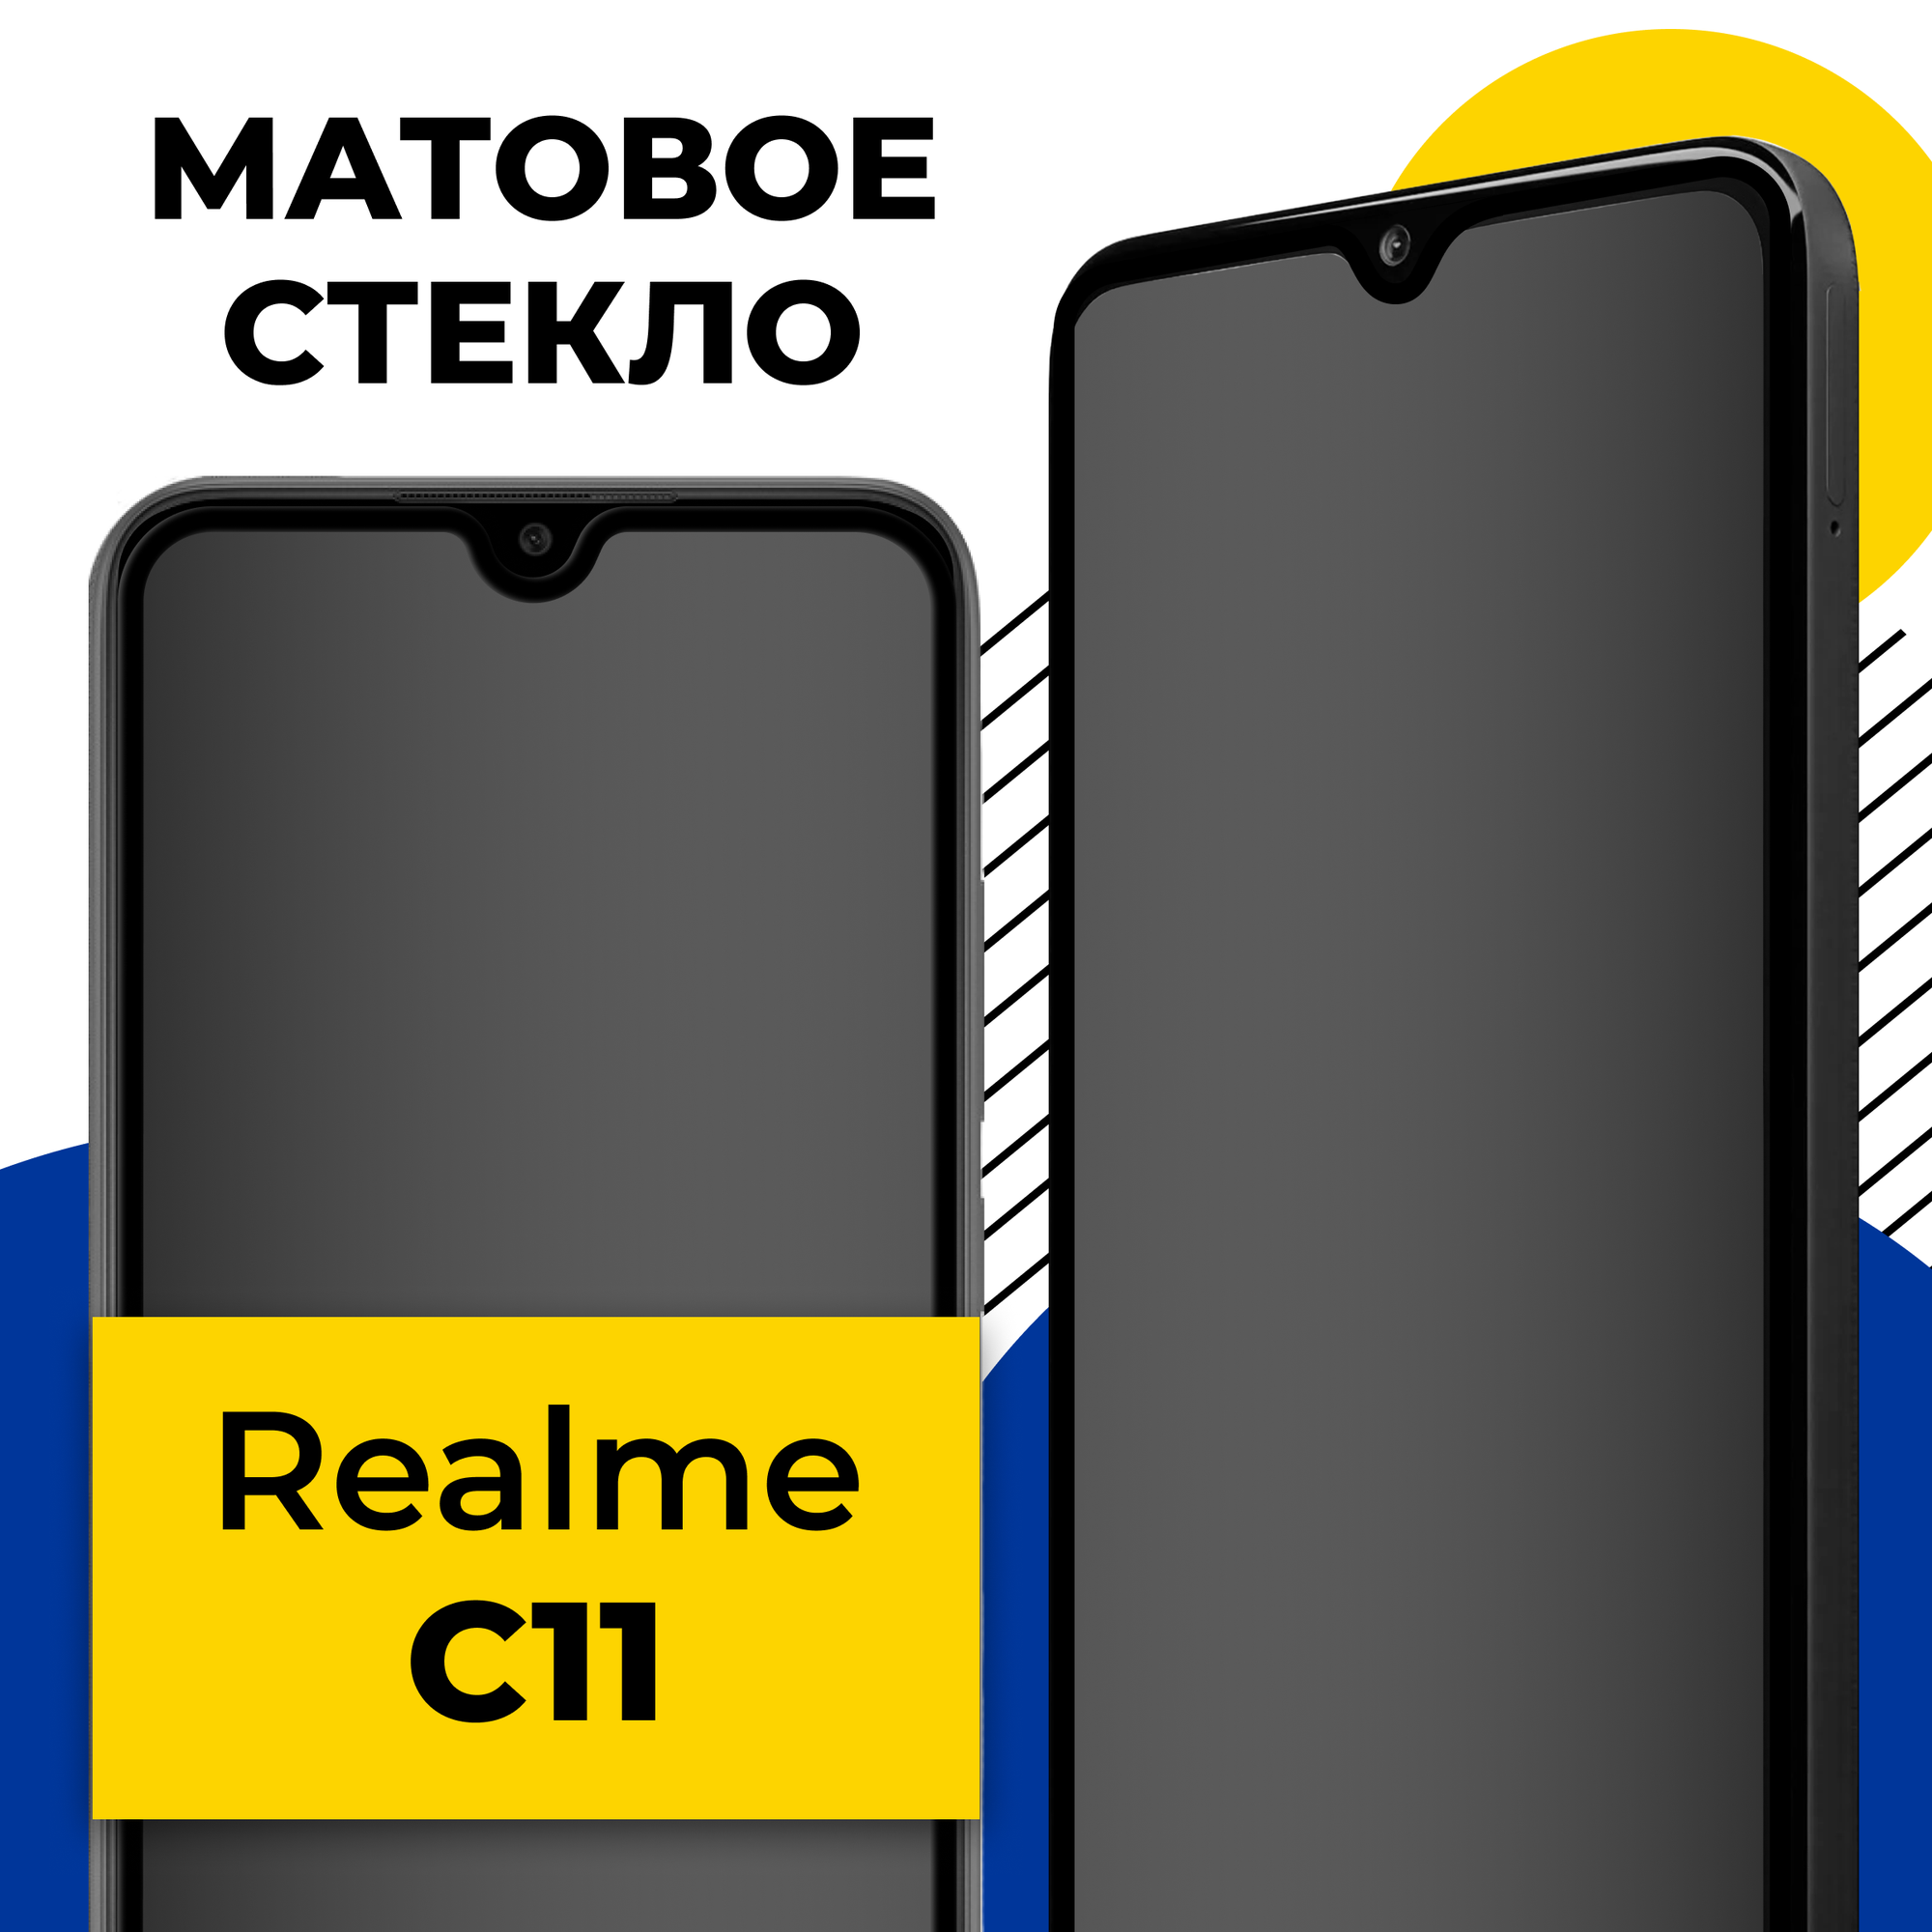 Матовое защитное стекло на телефон Realme C11 / Противоударное полноэкранное стекло 2.5D на смартфон Реалми С11 с олеофобным покрытием